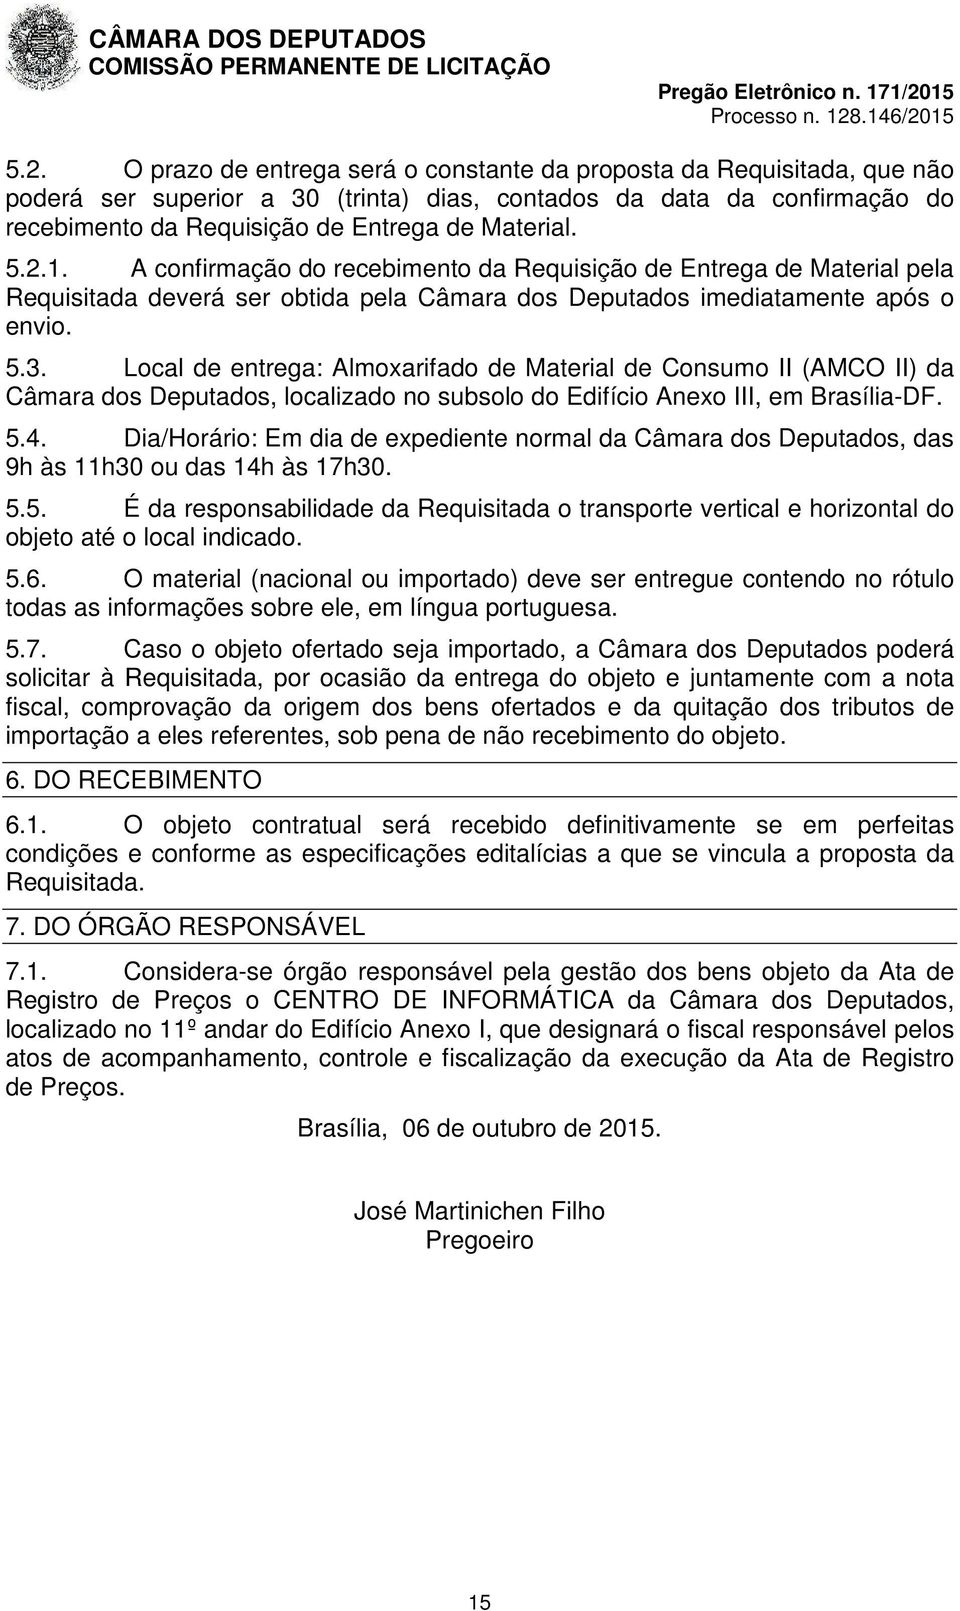 Local de entrega: Almoxarifado de Material de Consumo II (AMCO II) da Câmara dos Deputados, localizado no subsolo do Edifício Anexo III, em Brasília-DF. 5.4.